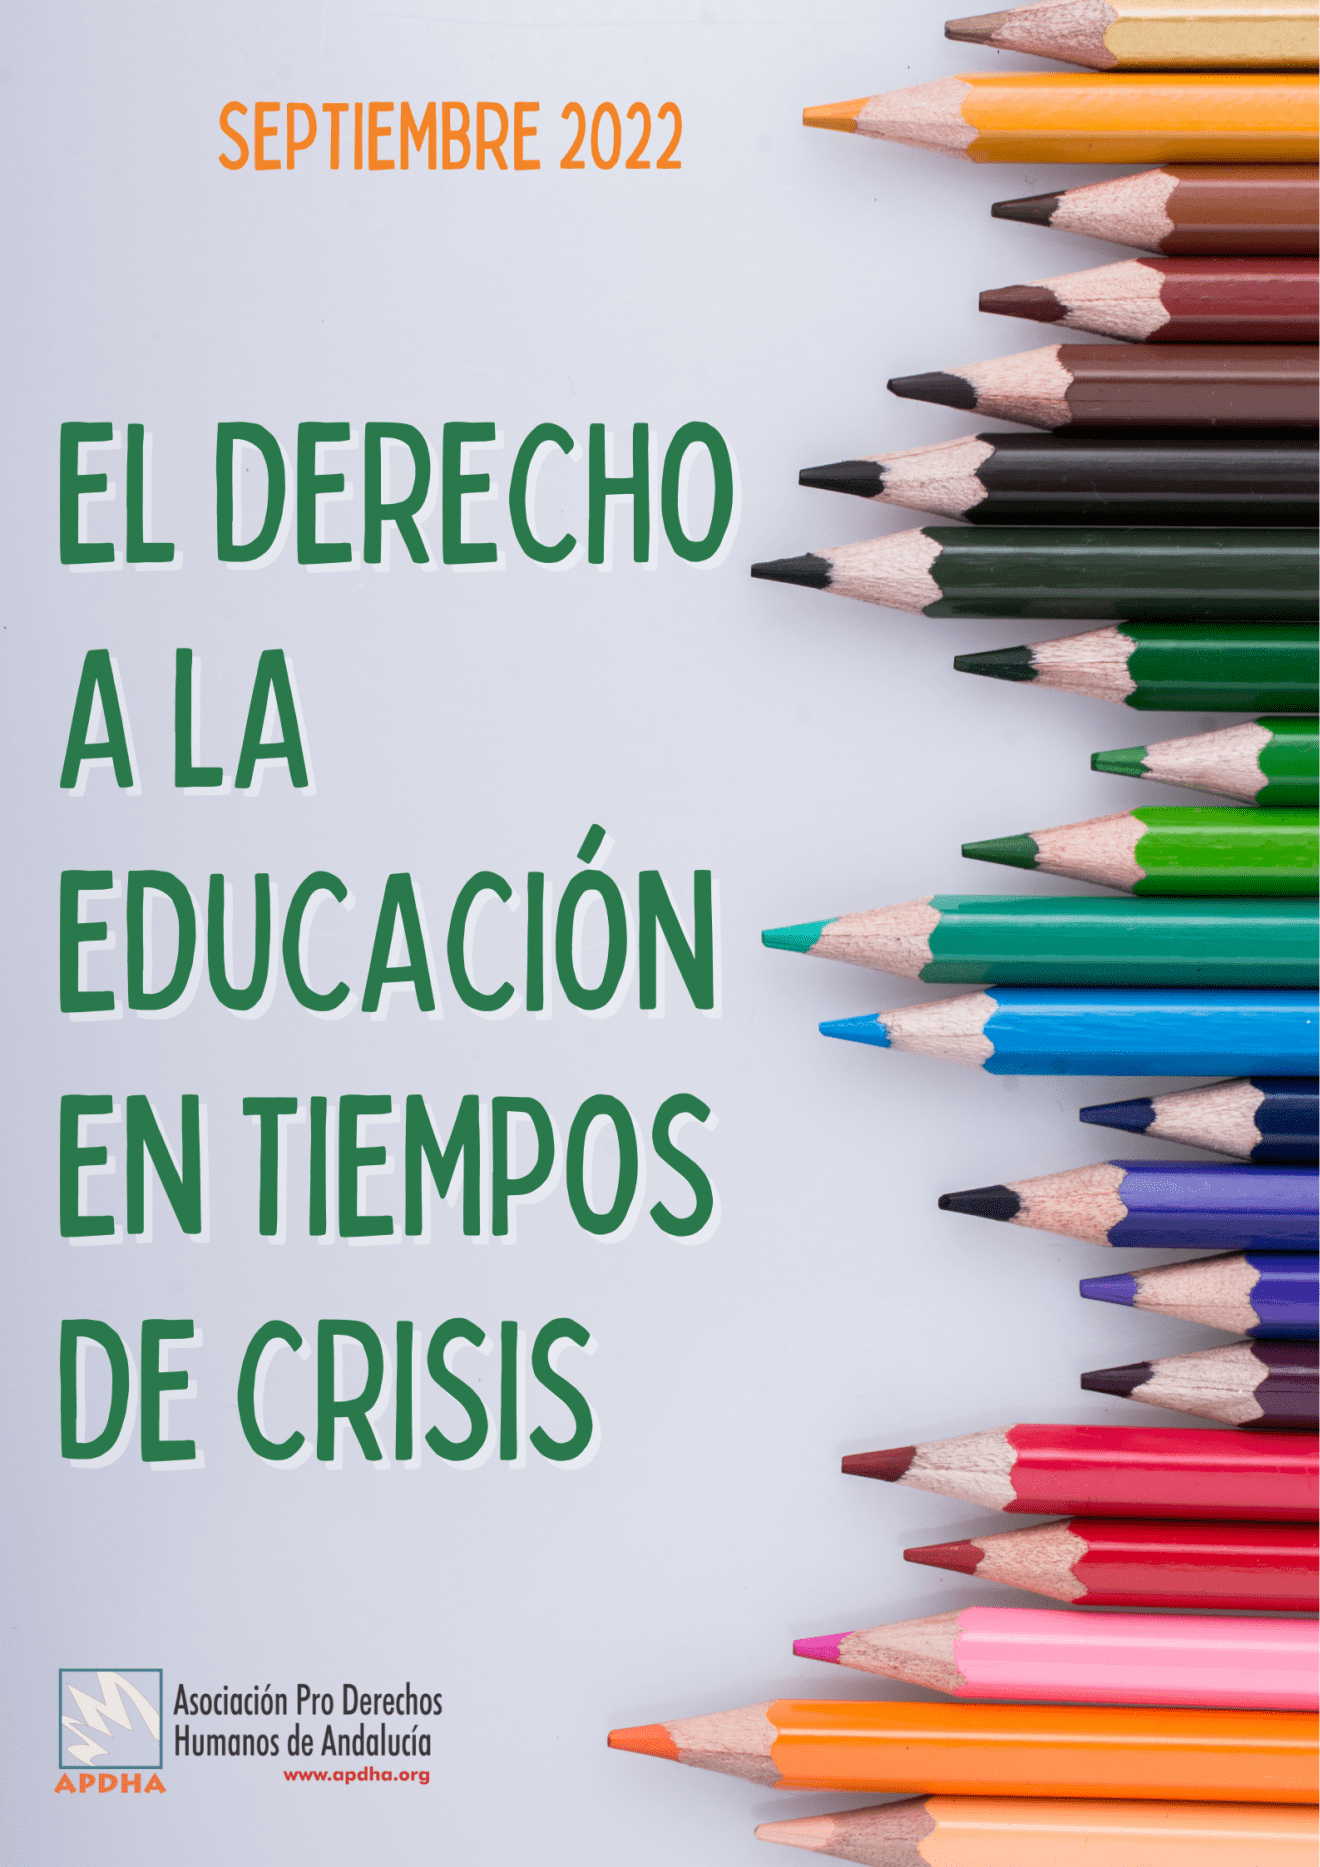 Alertamos en un informe de la fuerte presión privatizadora que sufre la educación pública por parte de la Junta en Cádiz y su repercusión en el aumento de la pobreza infantil